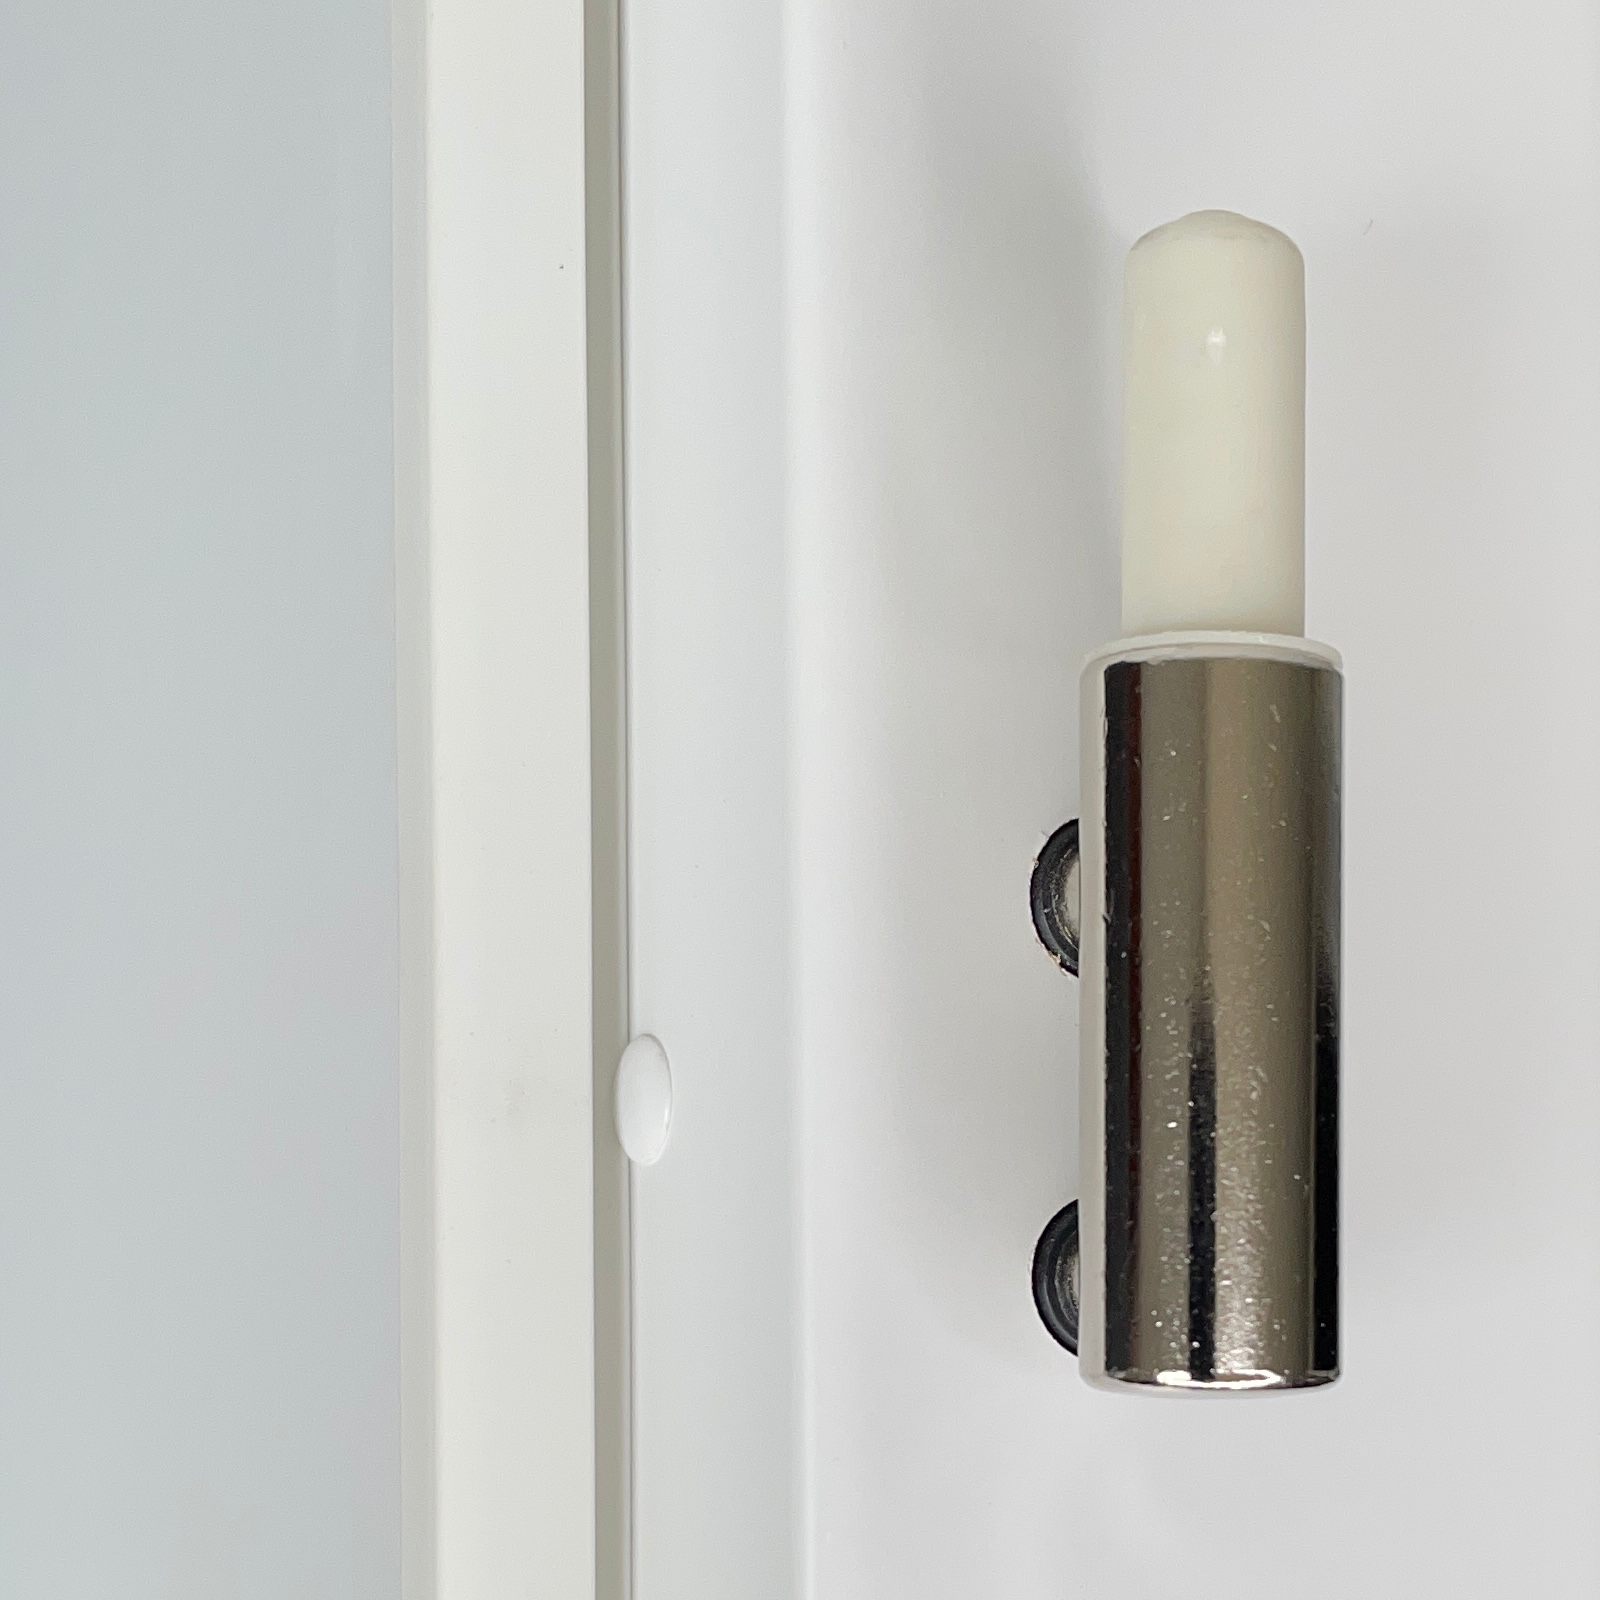 Zimmertür mit Zarge brillant-weiß Stiltür mit 3 Kassetten Designkante - Modell Stiltür M33